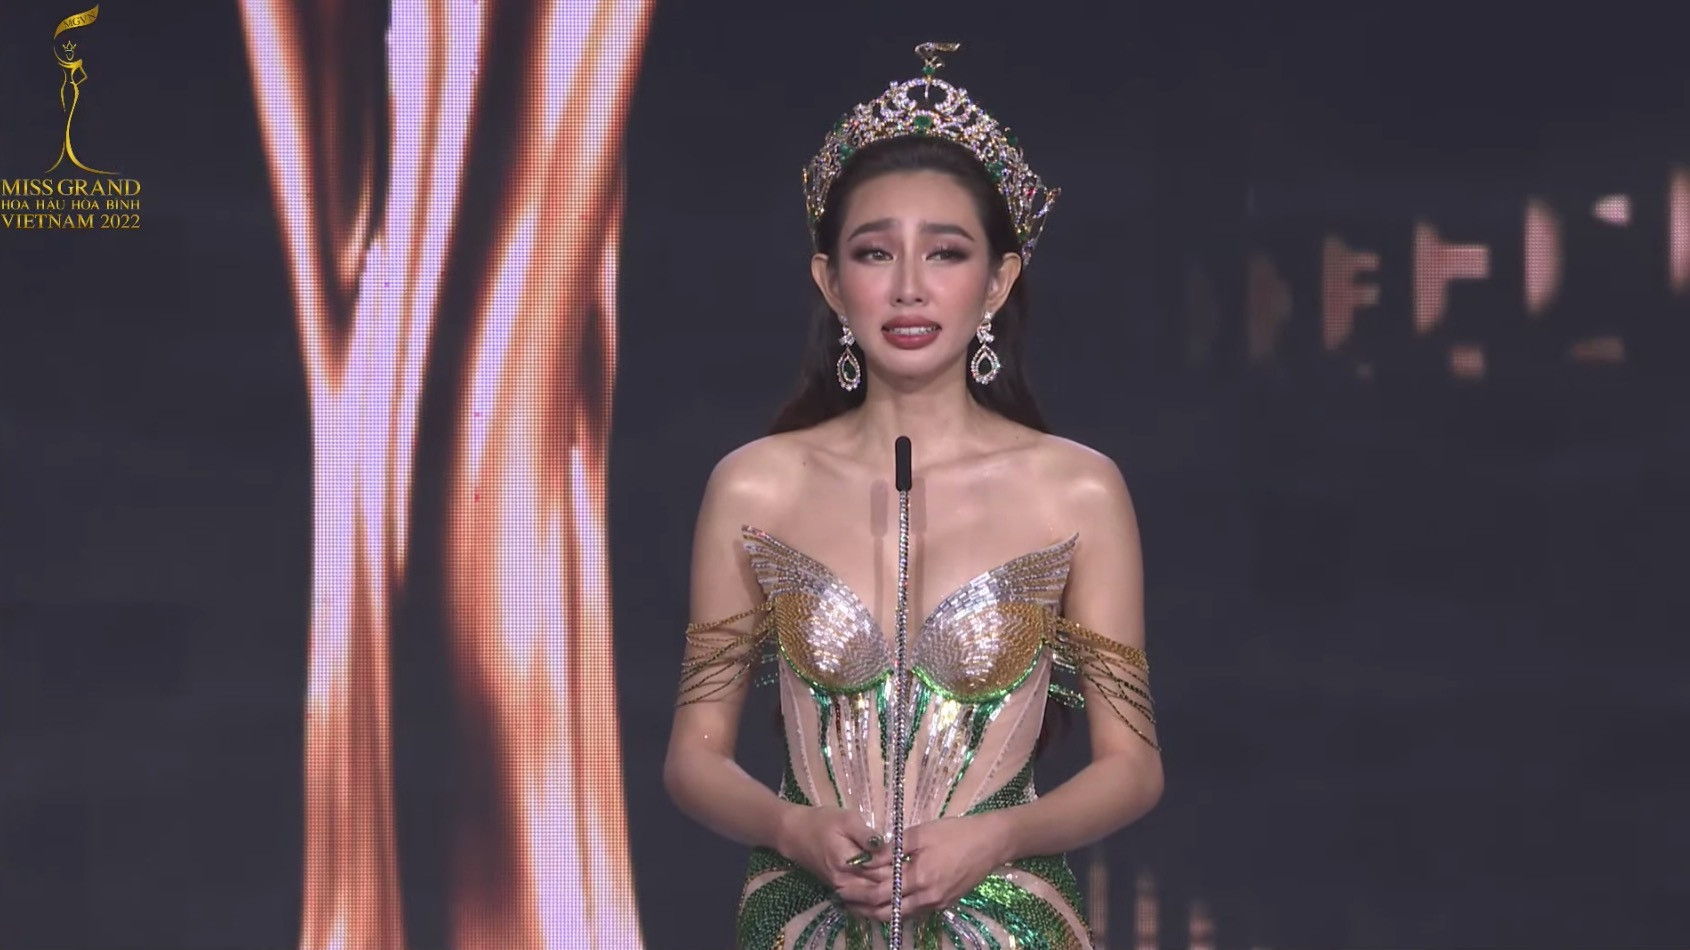 Đoàn Thiên Ân đăng quang Miss Grand Vietnam - Hoa hậu Hòa bình Việt Nam 2022 - 5